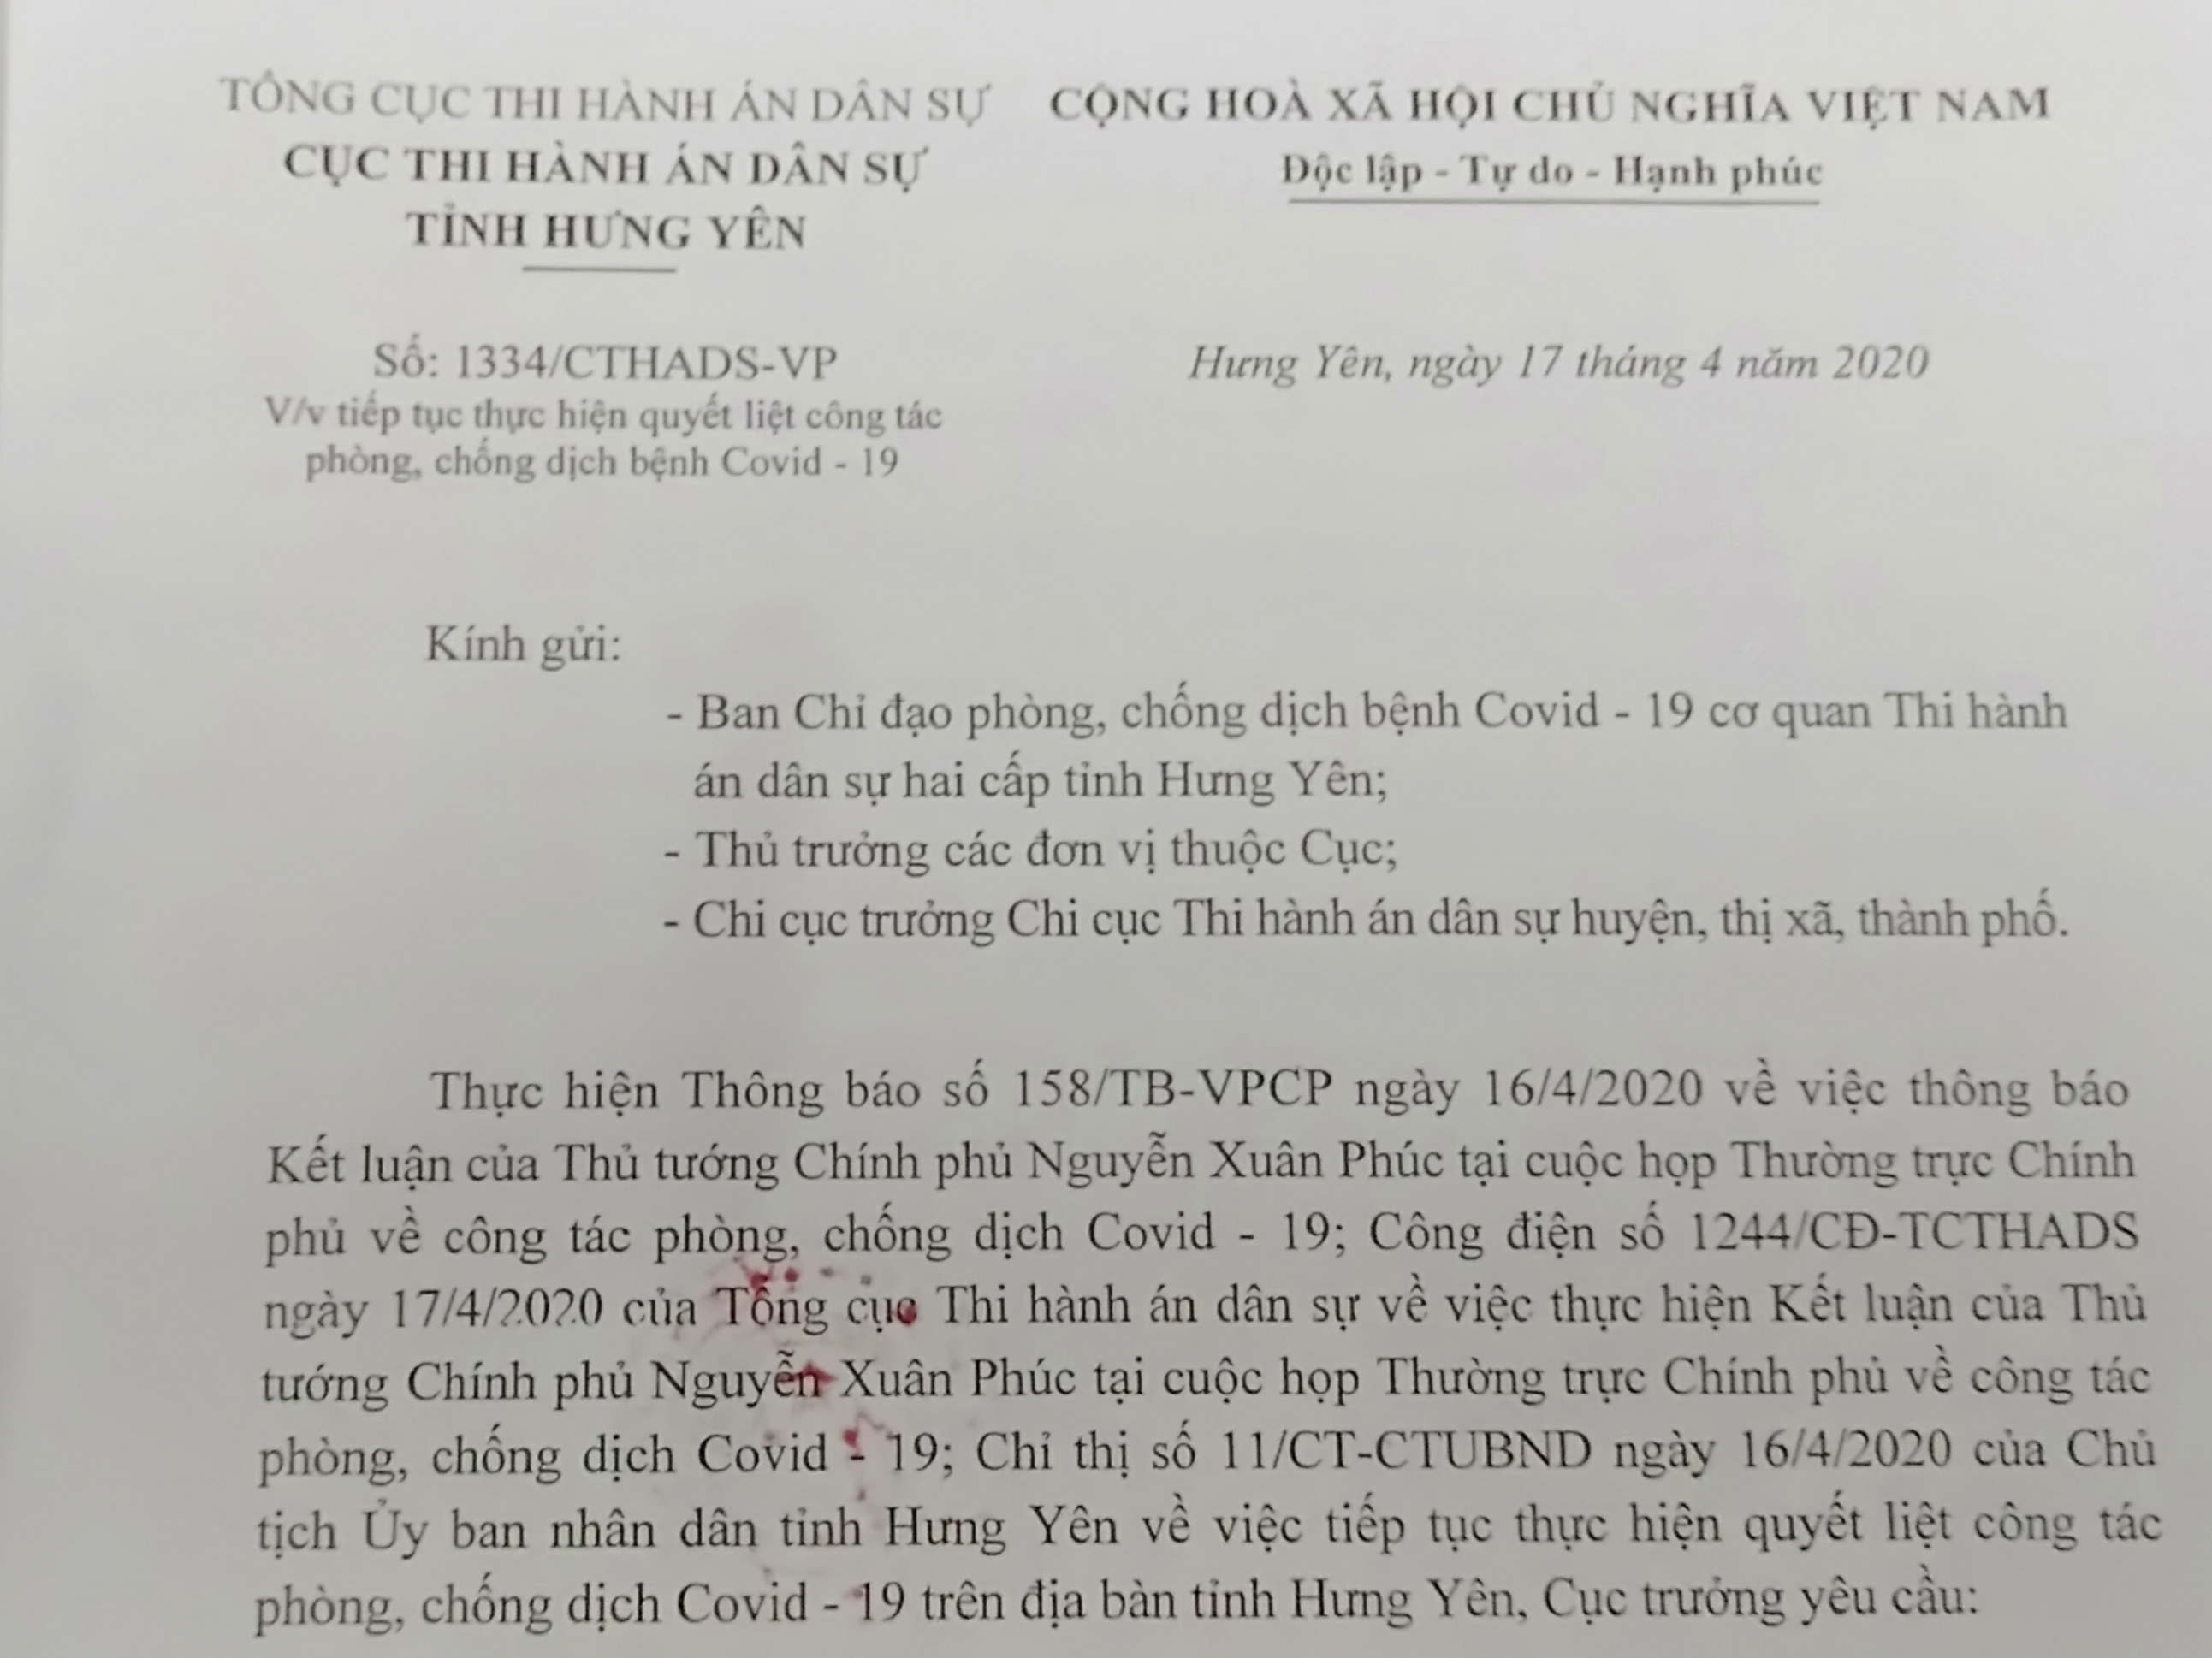 Cơ quan Thi hành án dân sự hai cấp tỉnh Hưng Yên tiếp tục quyết liệt thực hiện công tác phòng, chống dịch Covid - 19